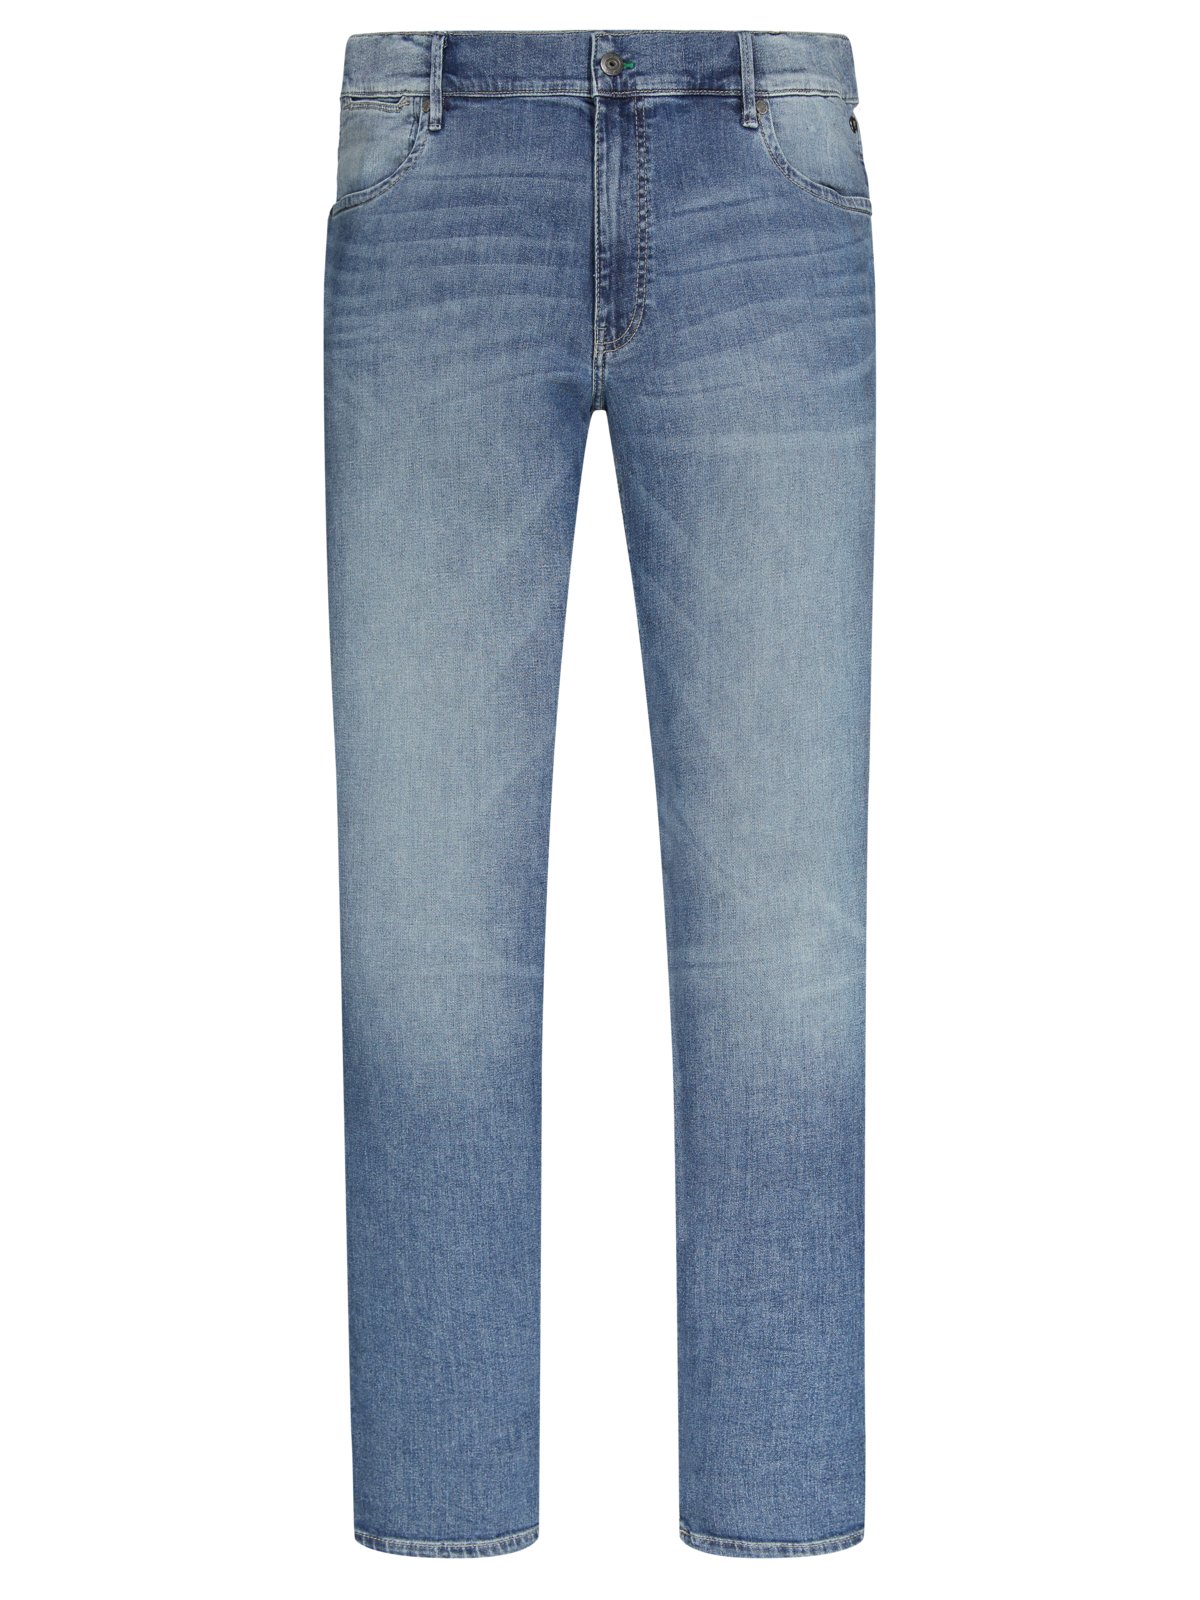 JP1880 5-Pocket Jeans mit elastischem Traveller Bund